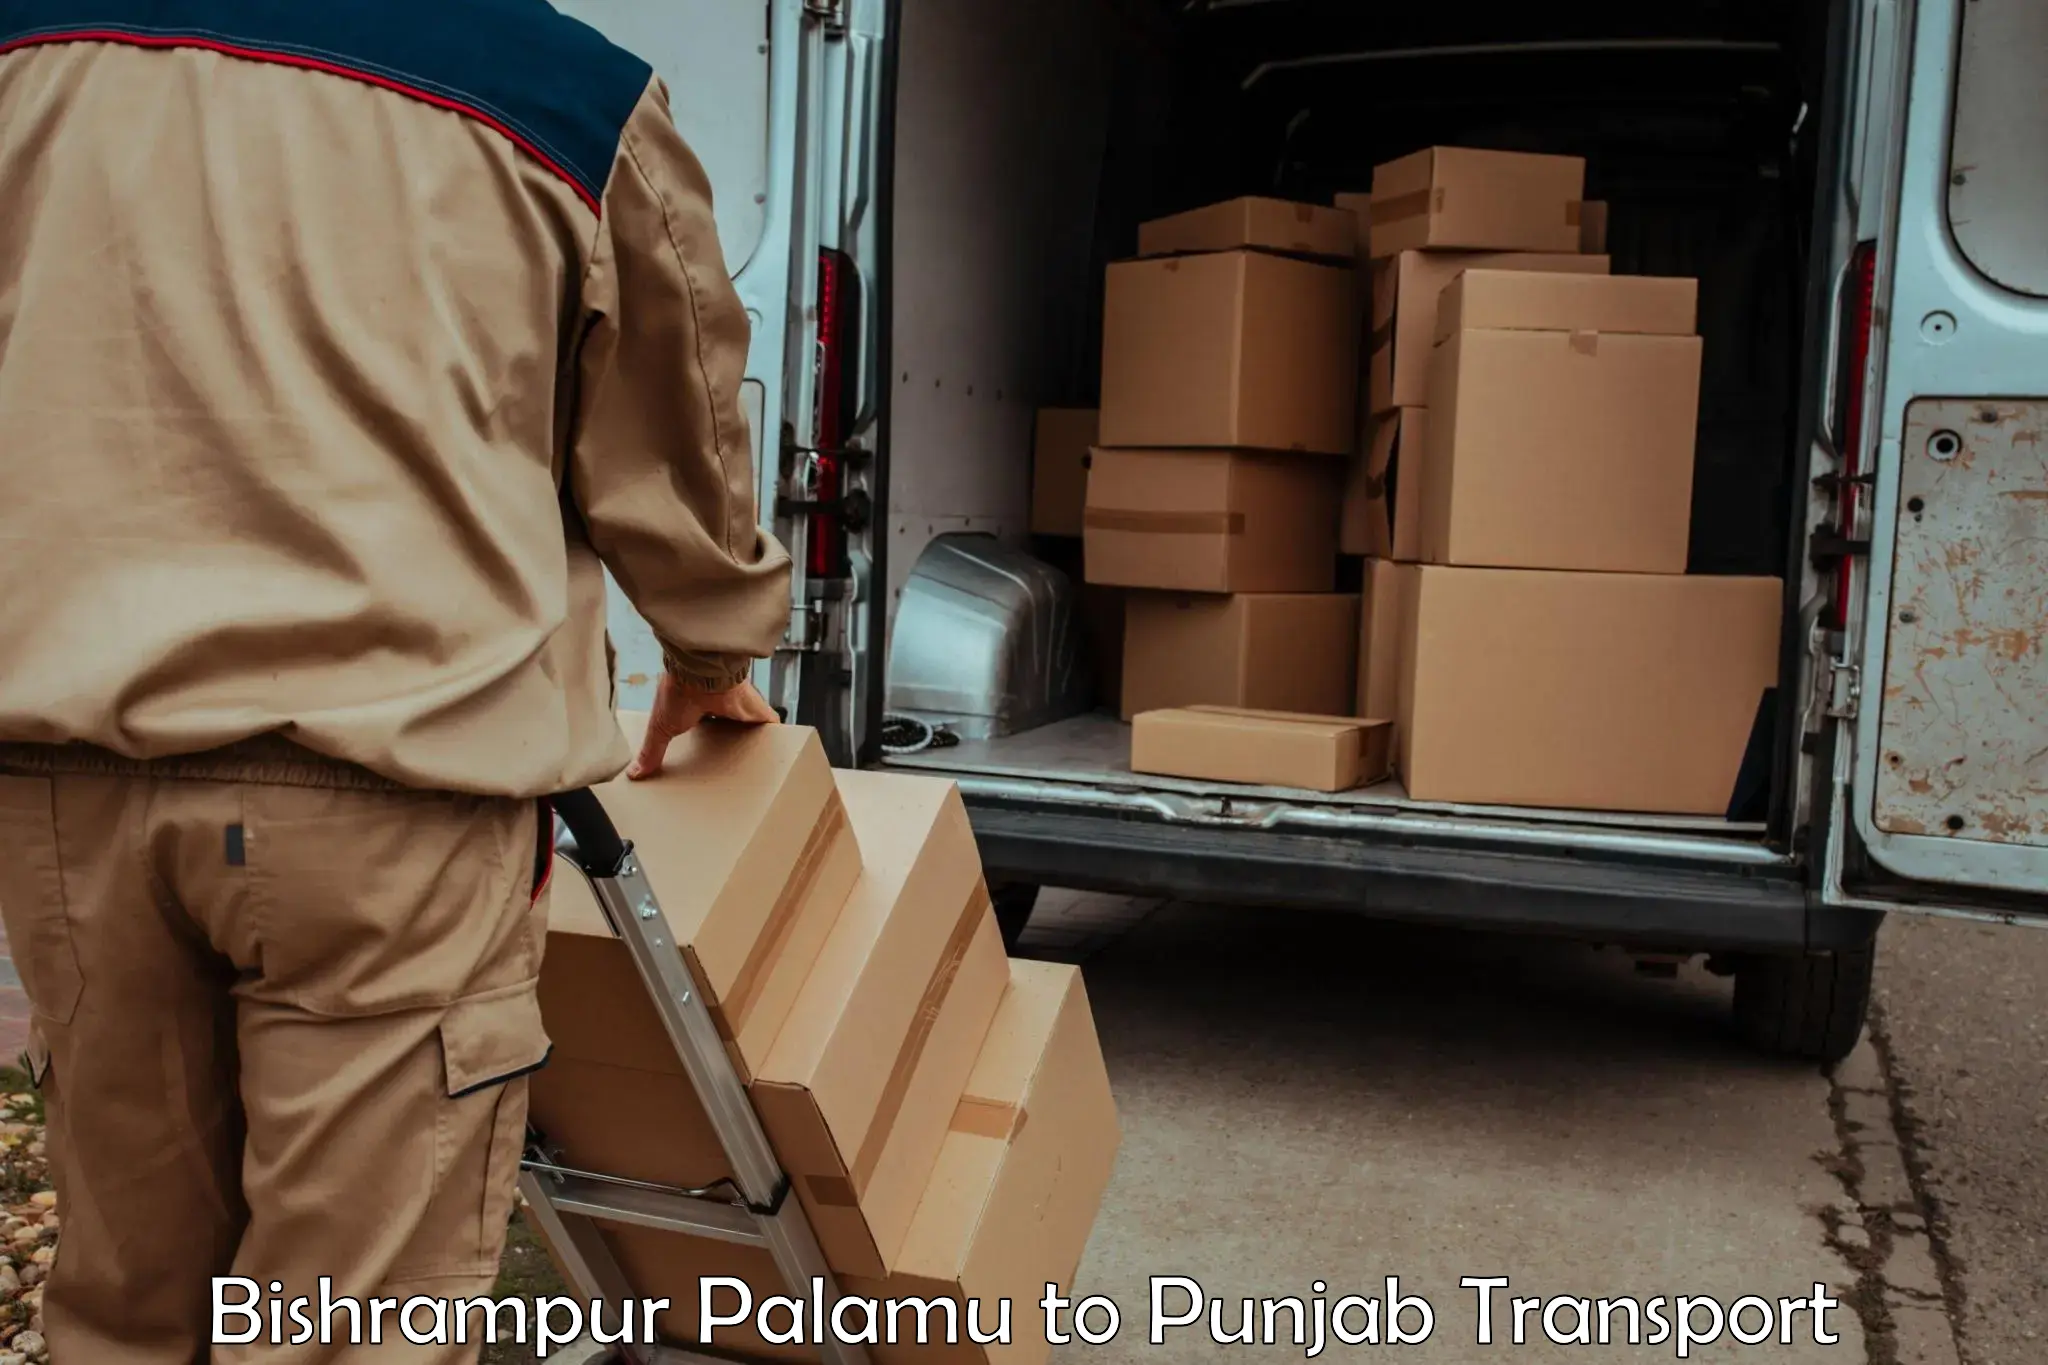 Container transport service Bishrampur Palamu to Jalandhar